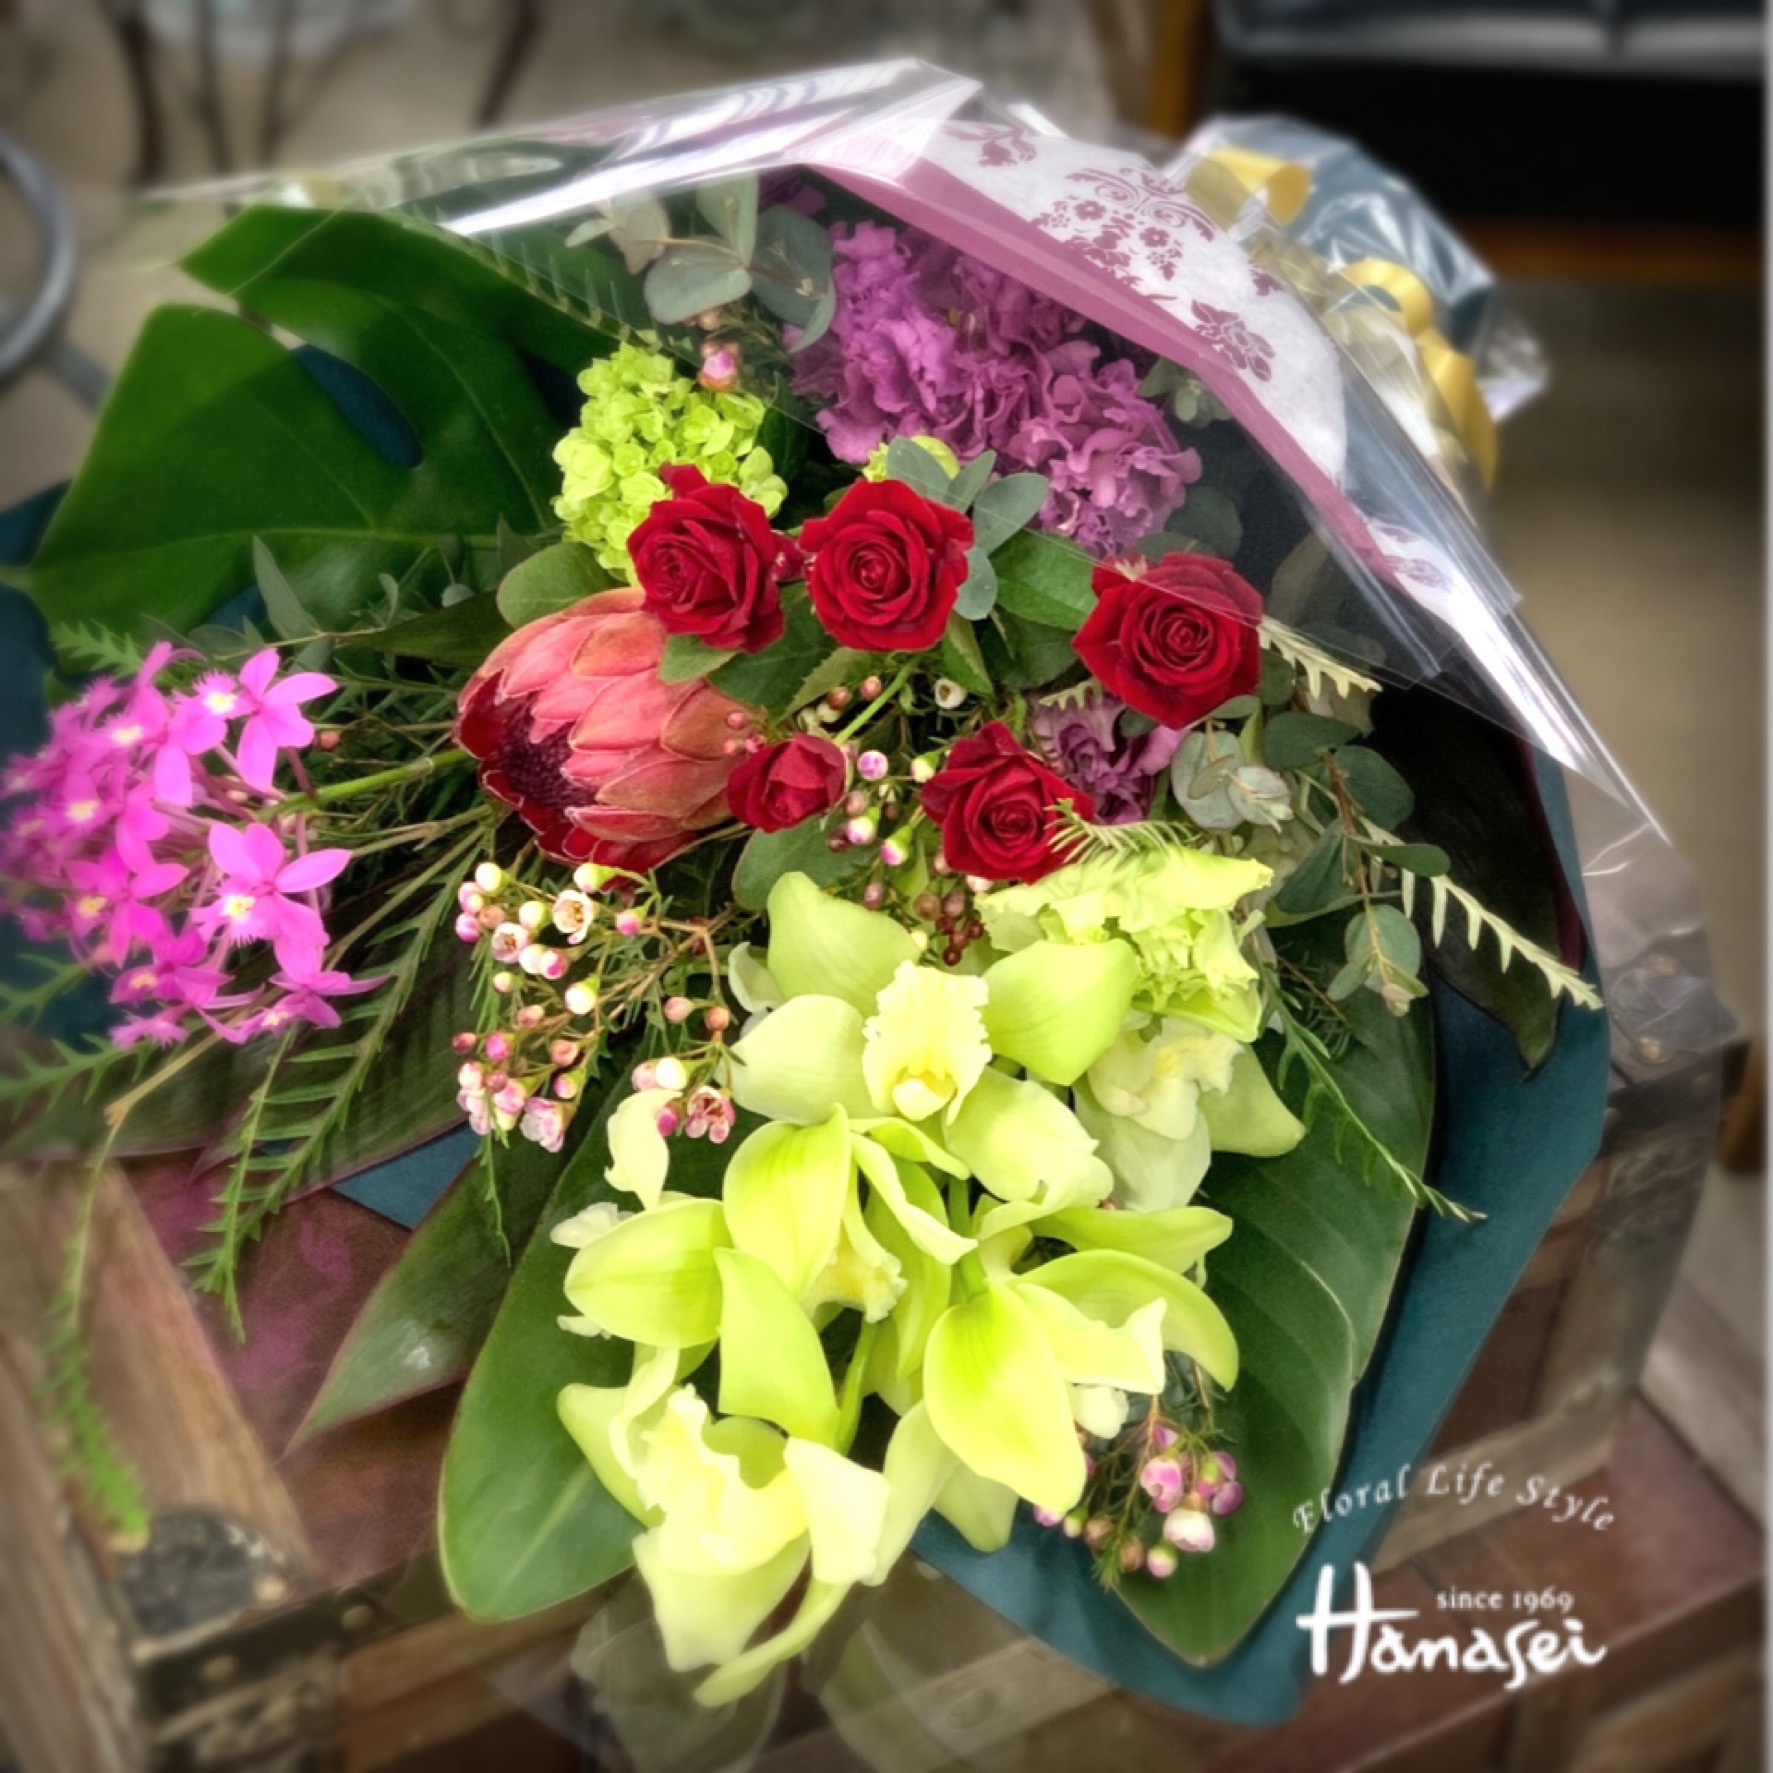 公式サイト 豊田市 花屋 Floral Life Style Hanasei 花成 花束 Bouquet Typeブーケタイプ